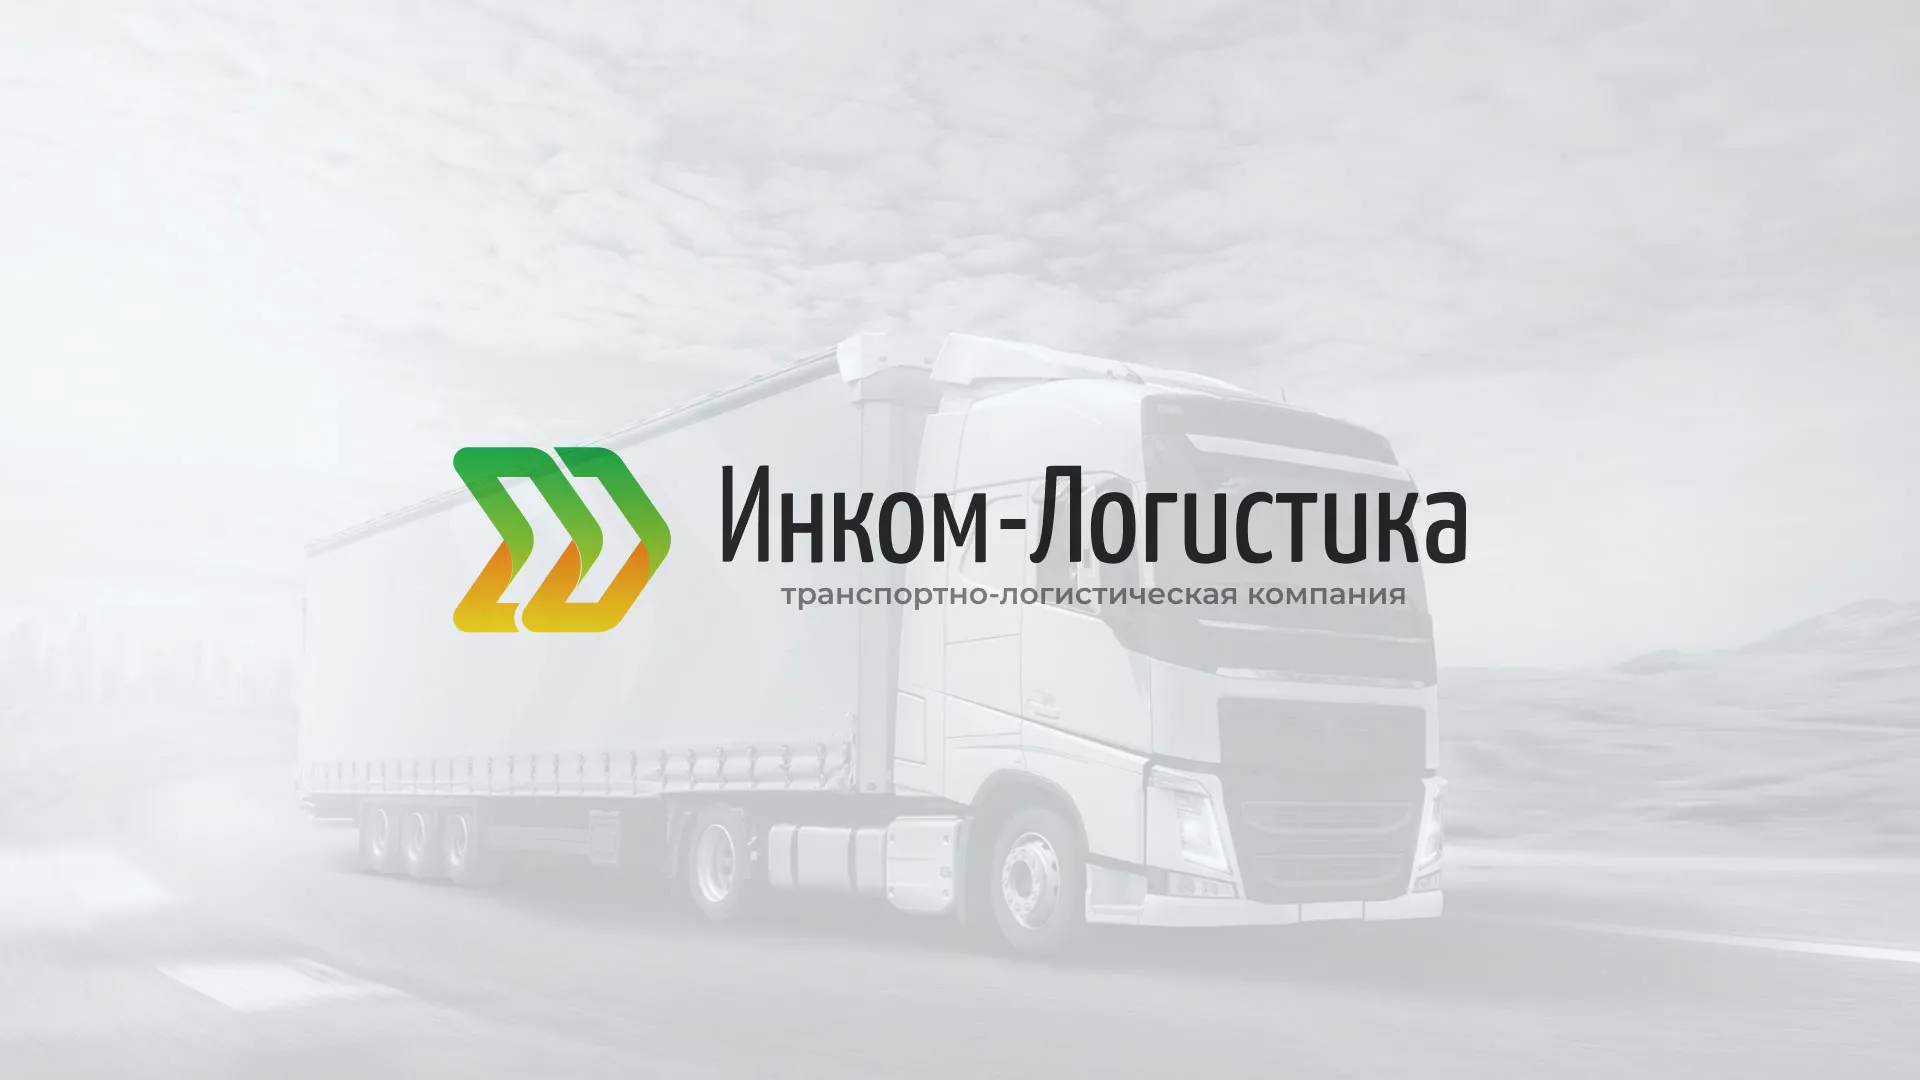 Разработка логотипа и сайта компании «Инком-Логистика» в Тольятти